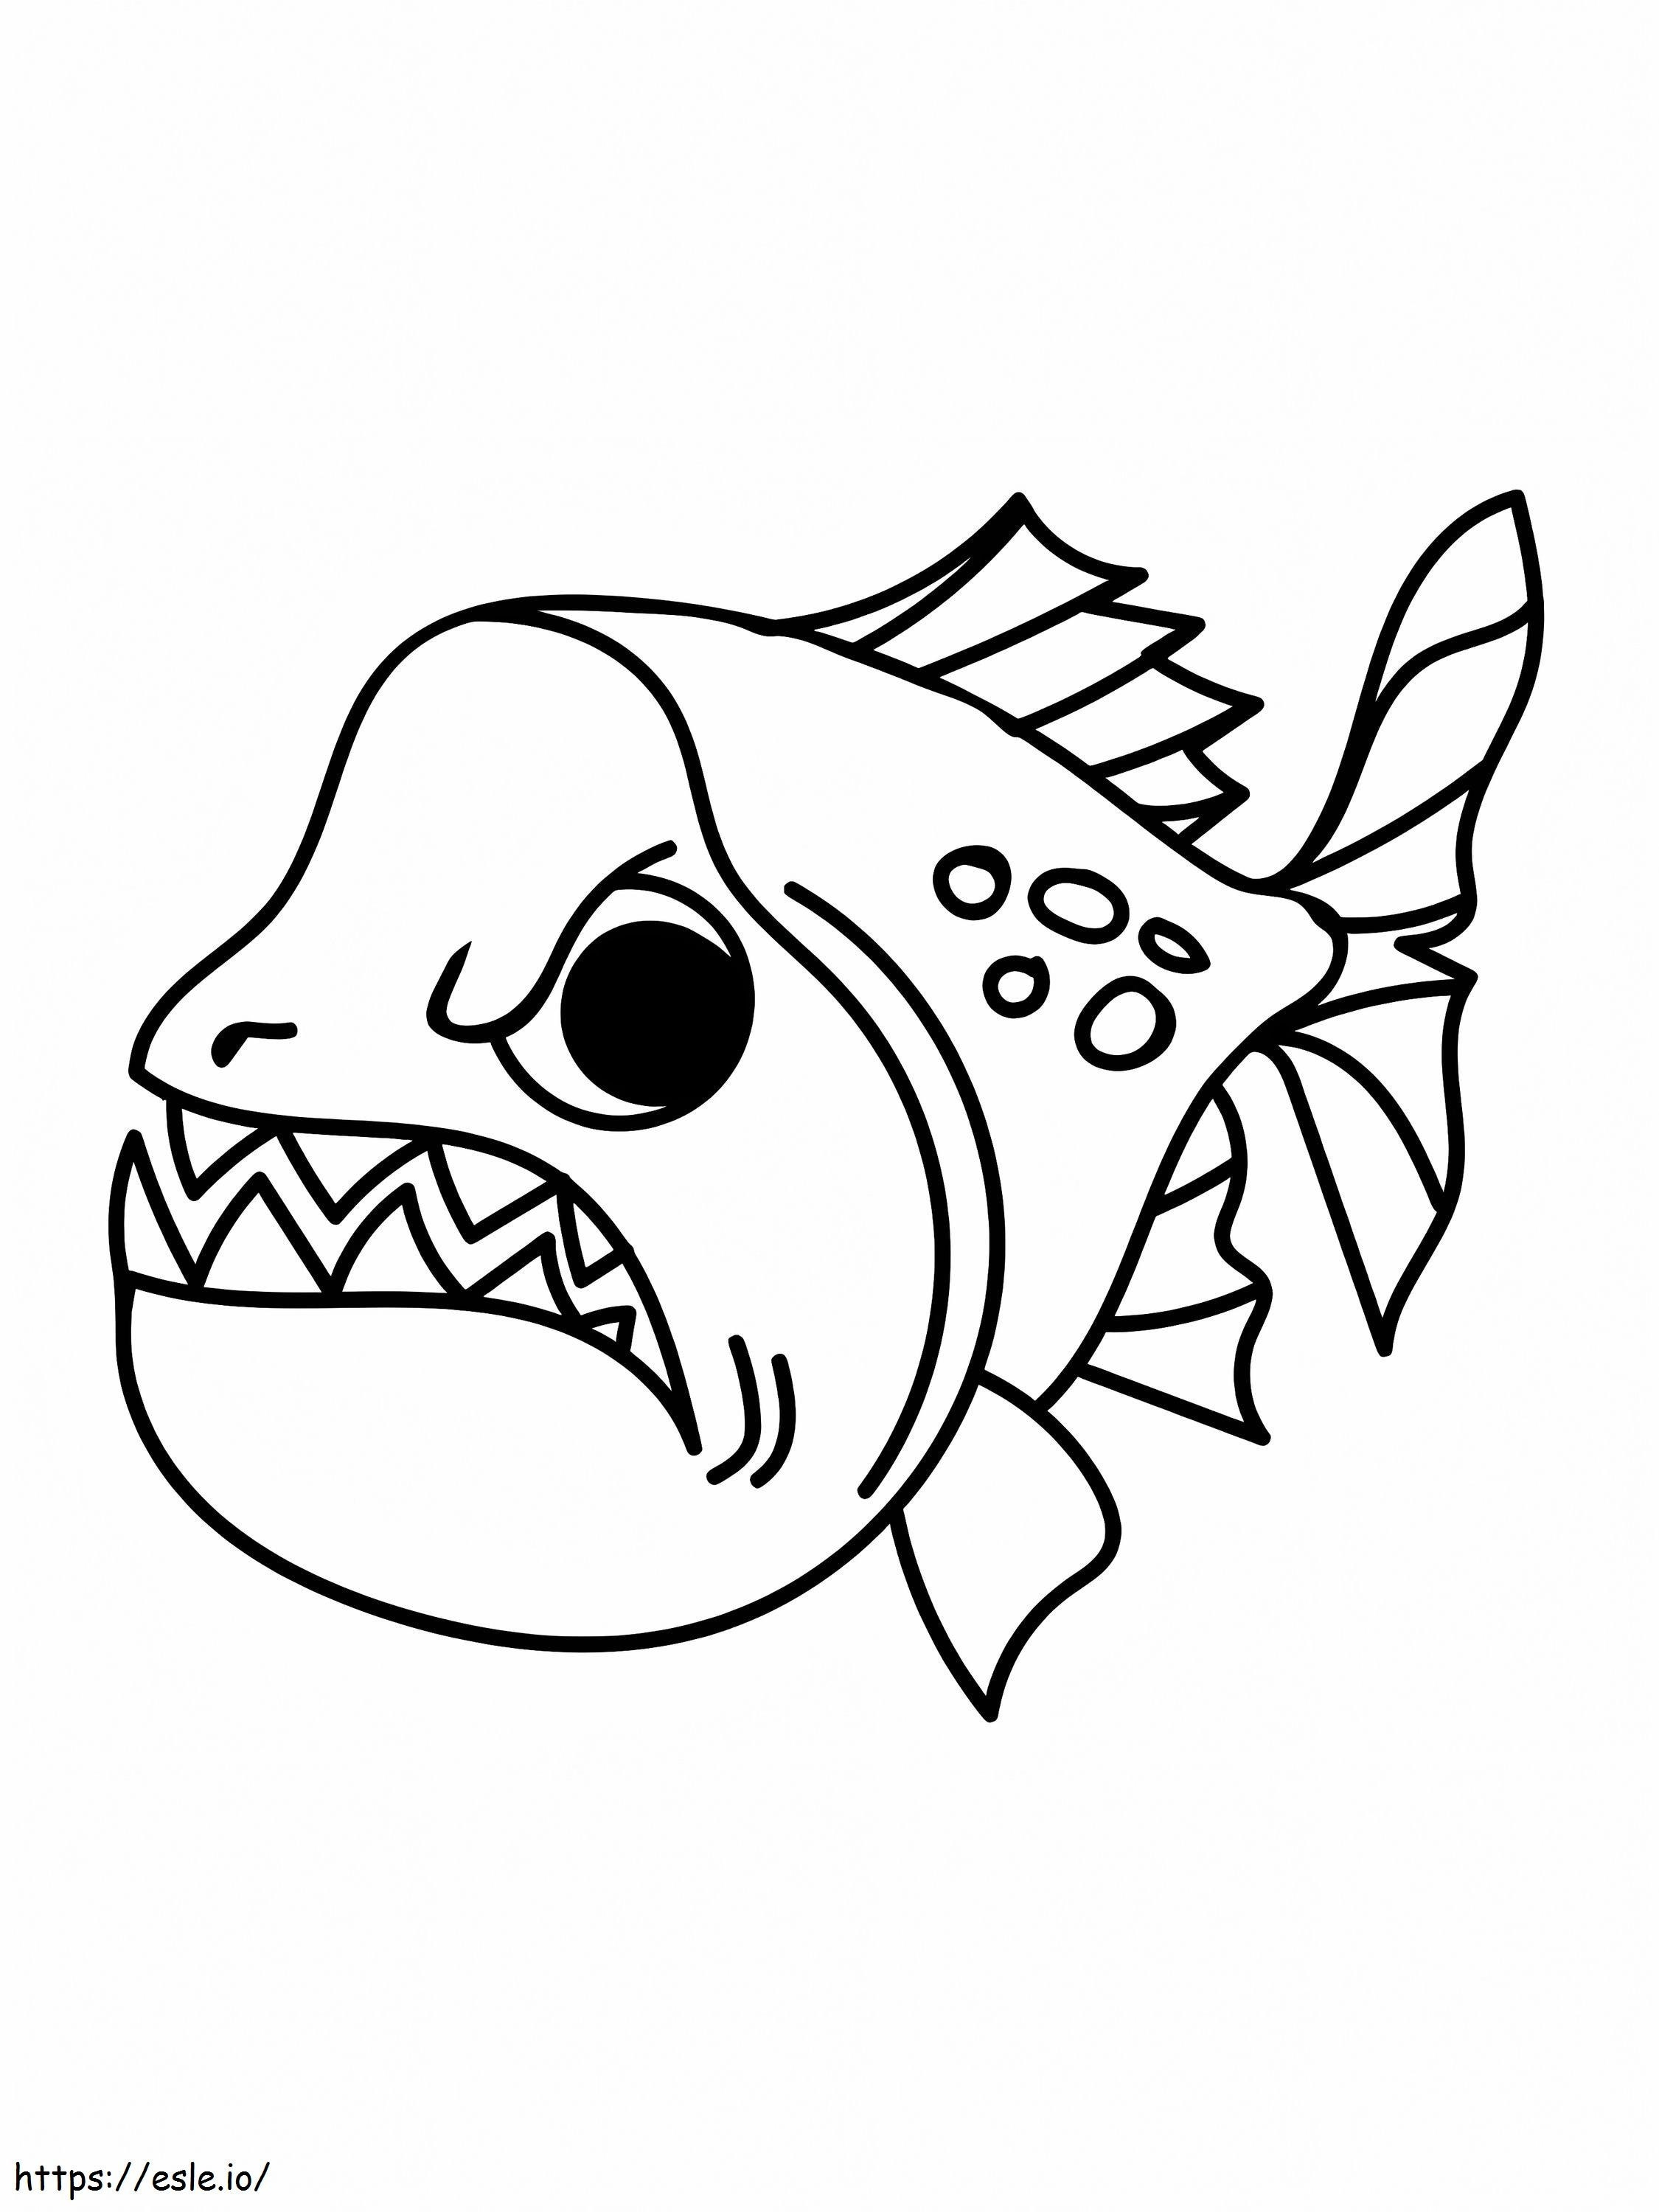 Coloriage Poisson Piranha en colère à imprimer dessin